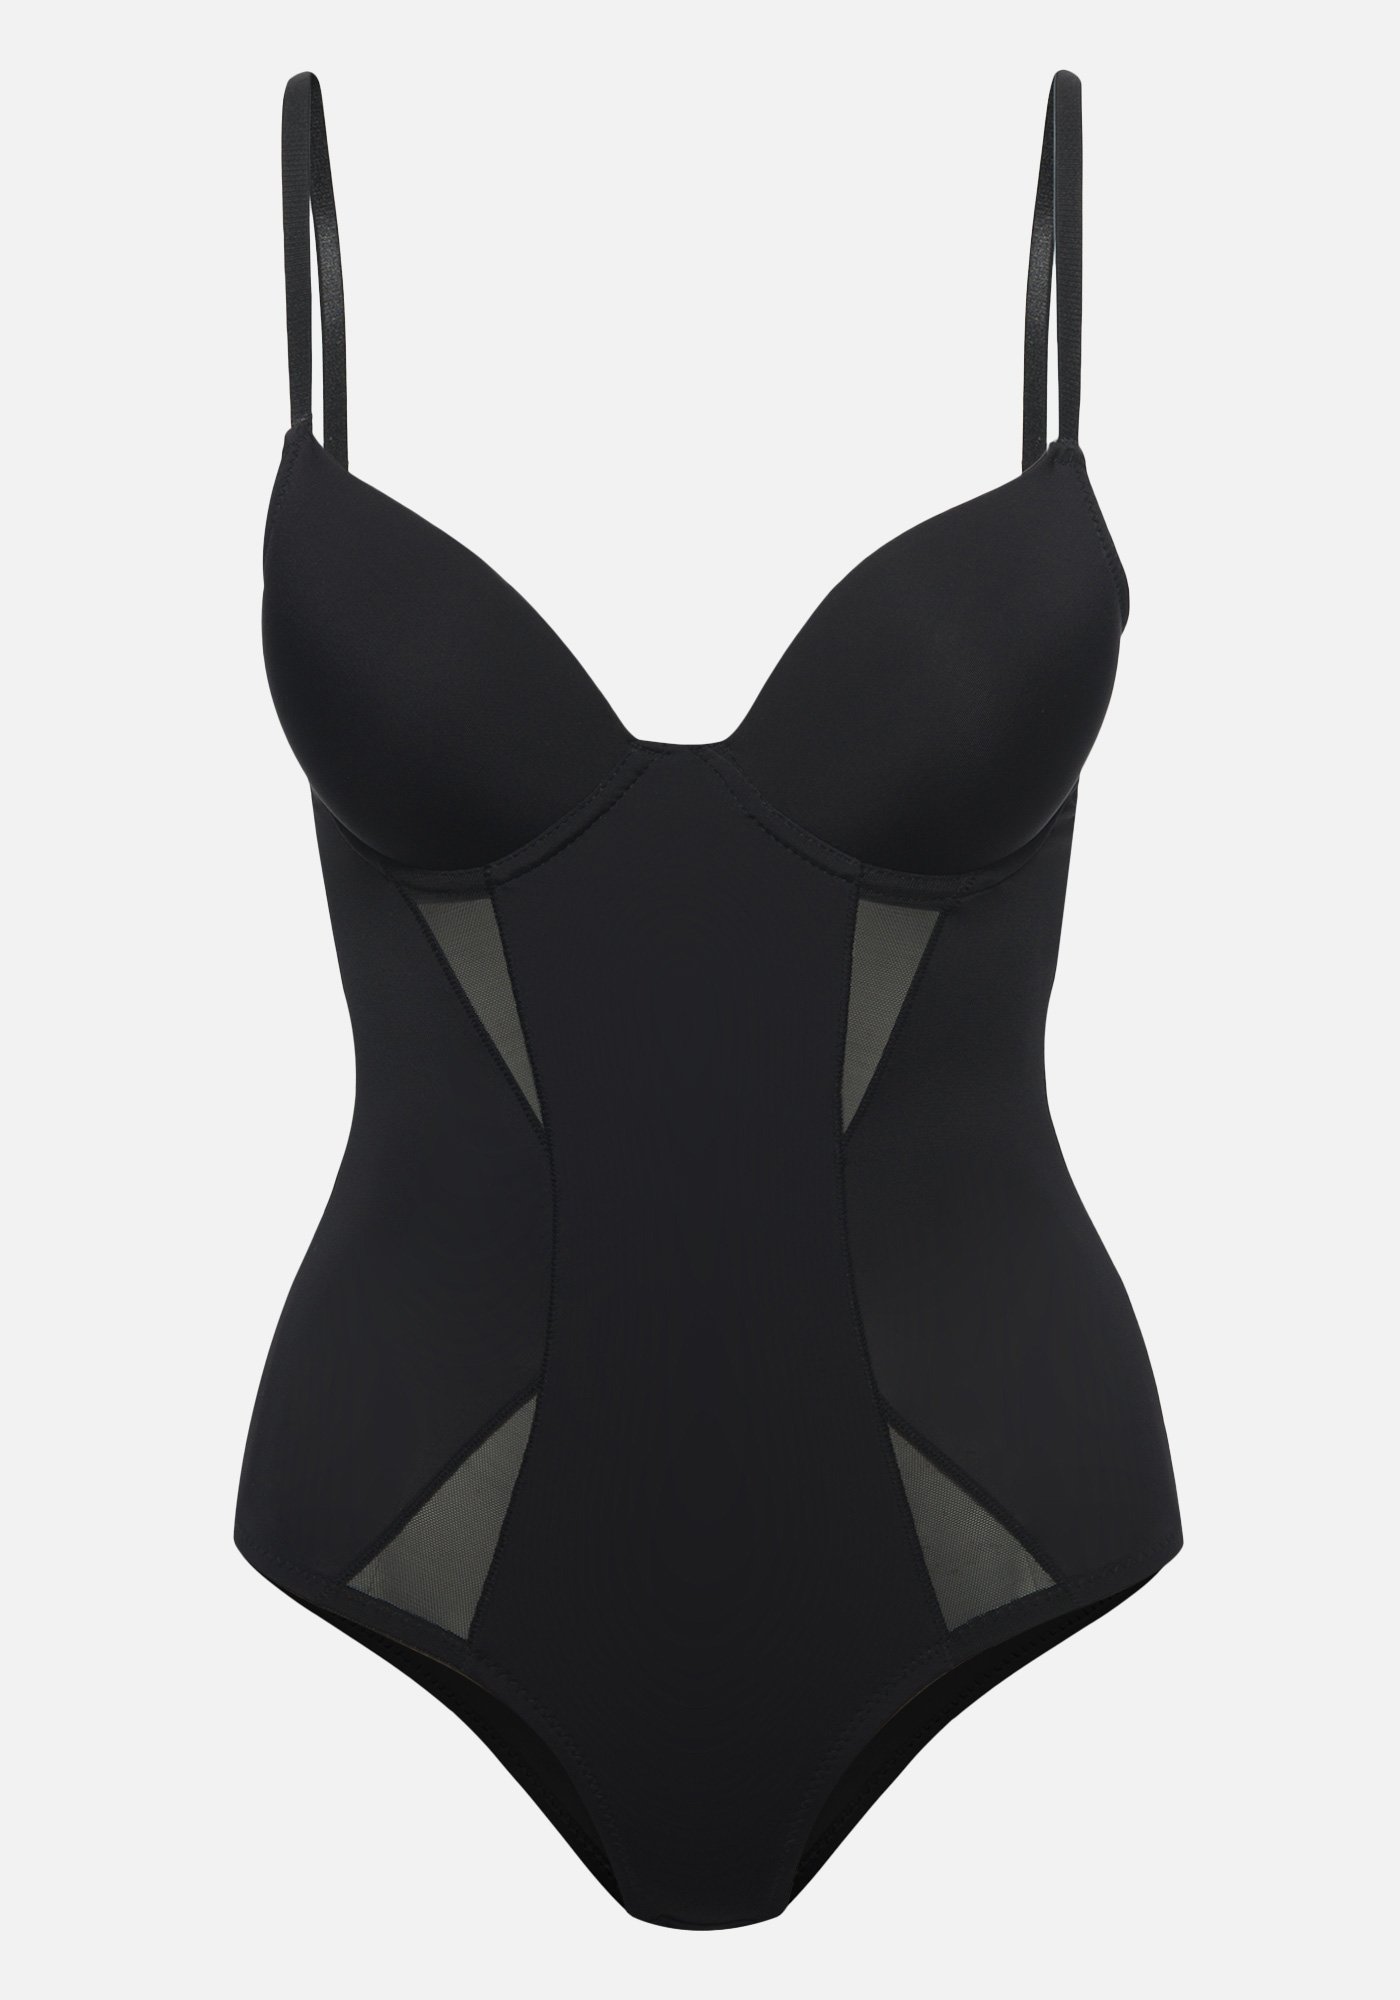 Bebe Women's Bodysuit Shapewear, Size 38D in Black Spandex/Nylon